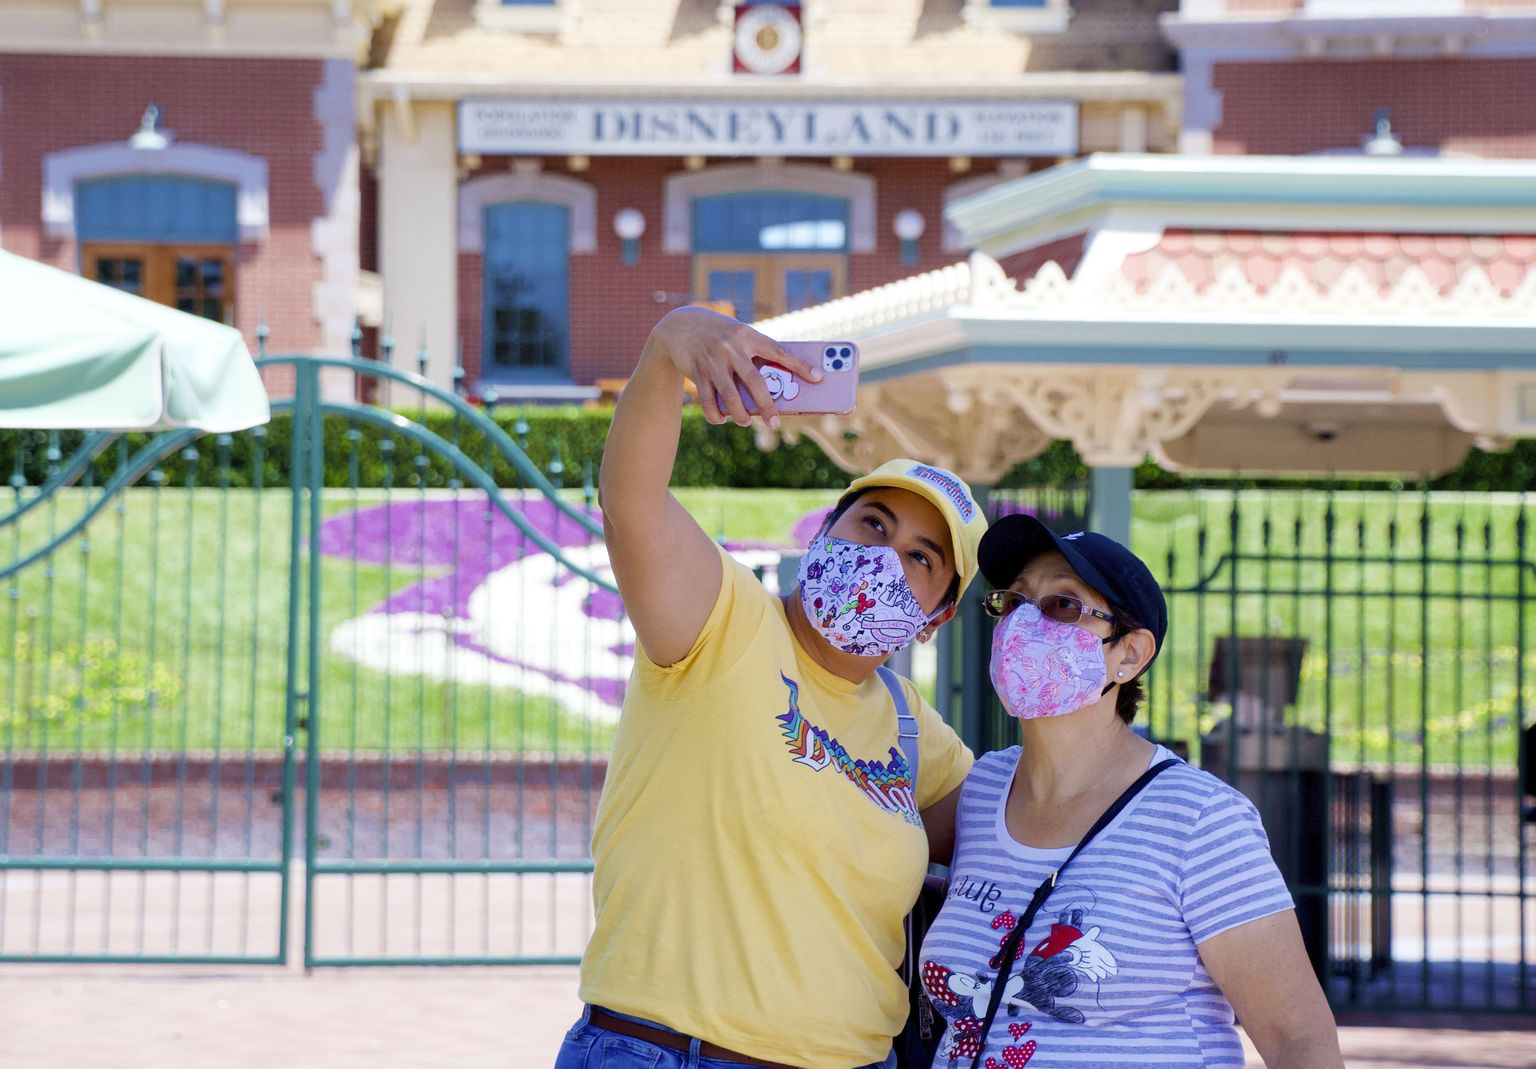 Maskides külastajad Disneylandi sissepääsu juures pargi üldala avamispäeval Anaheimis, Californias – nädalavahetusel avatakse koroonaviiruse kiuste uksed ka Floridas.